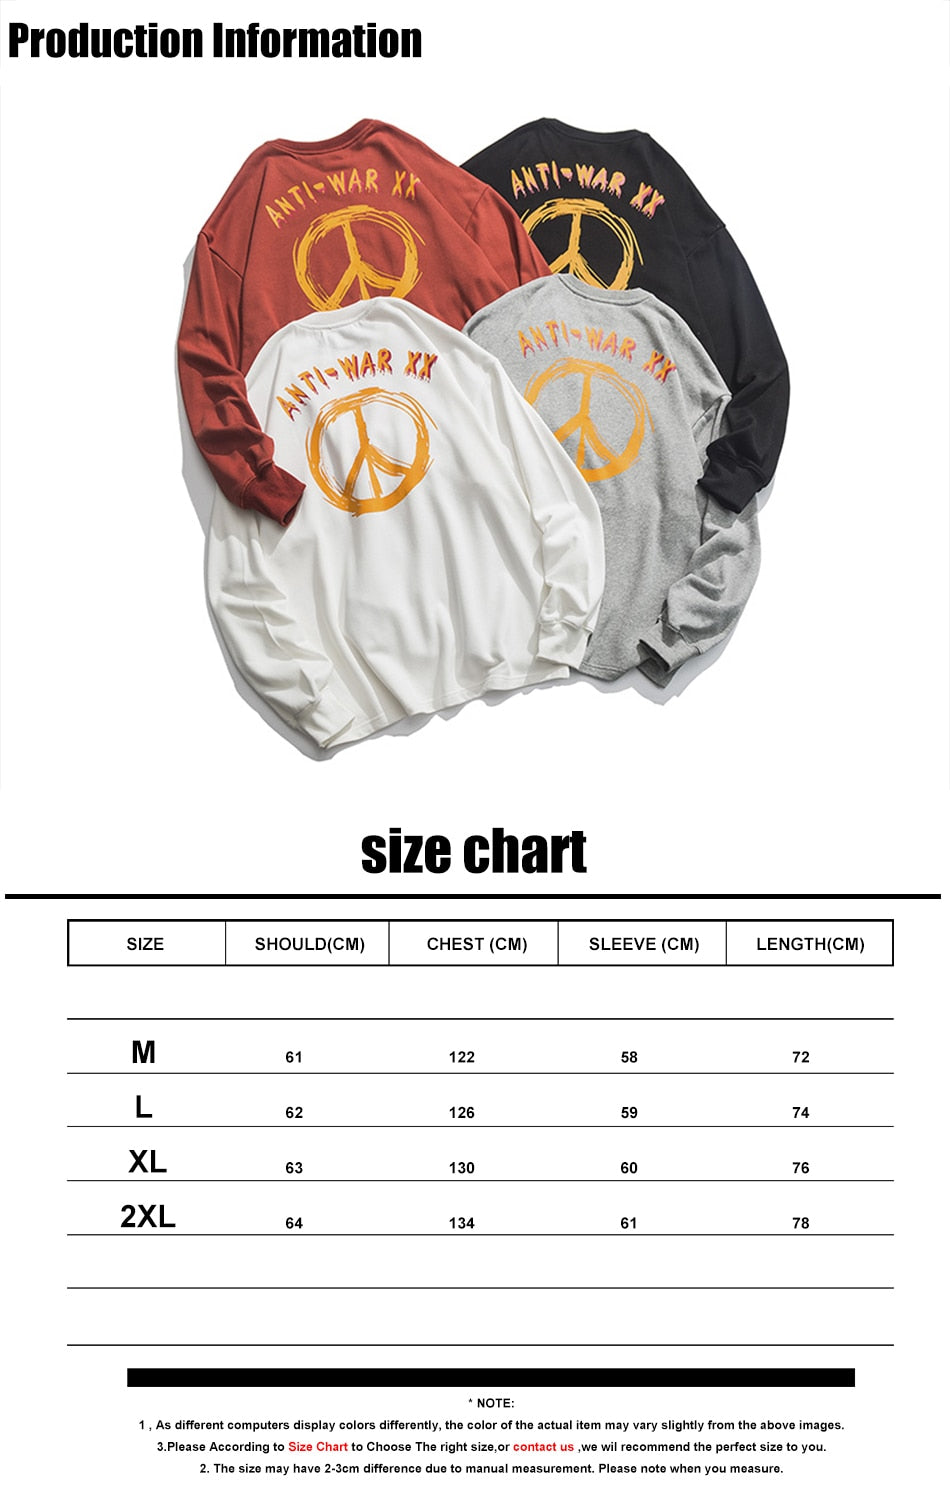 Youth Men Streetwear Funny Print Hoodies Sweatshirts 2020 Oversized Mens Harajuku Hoodie Vintage Korean Black Clothes